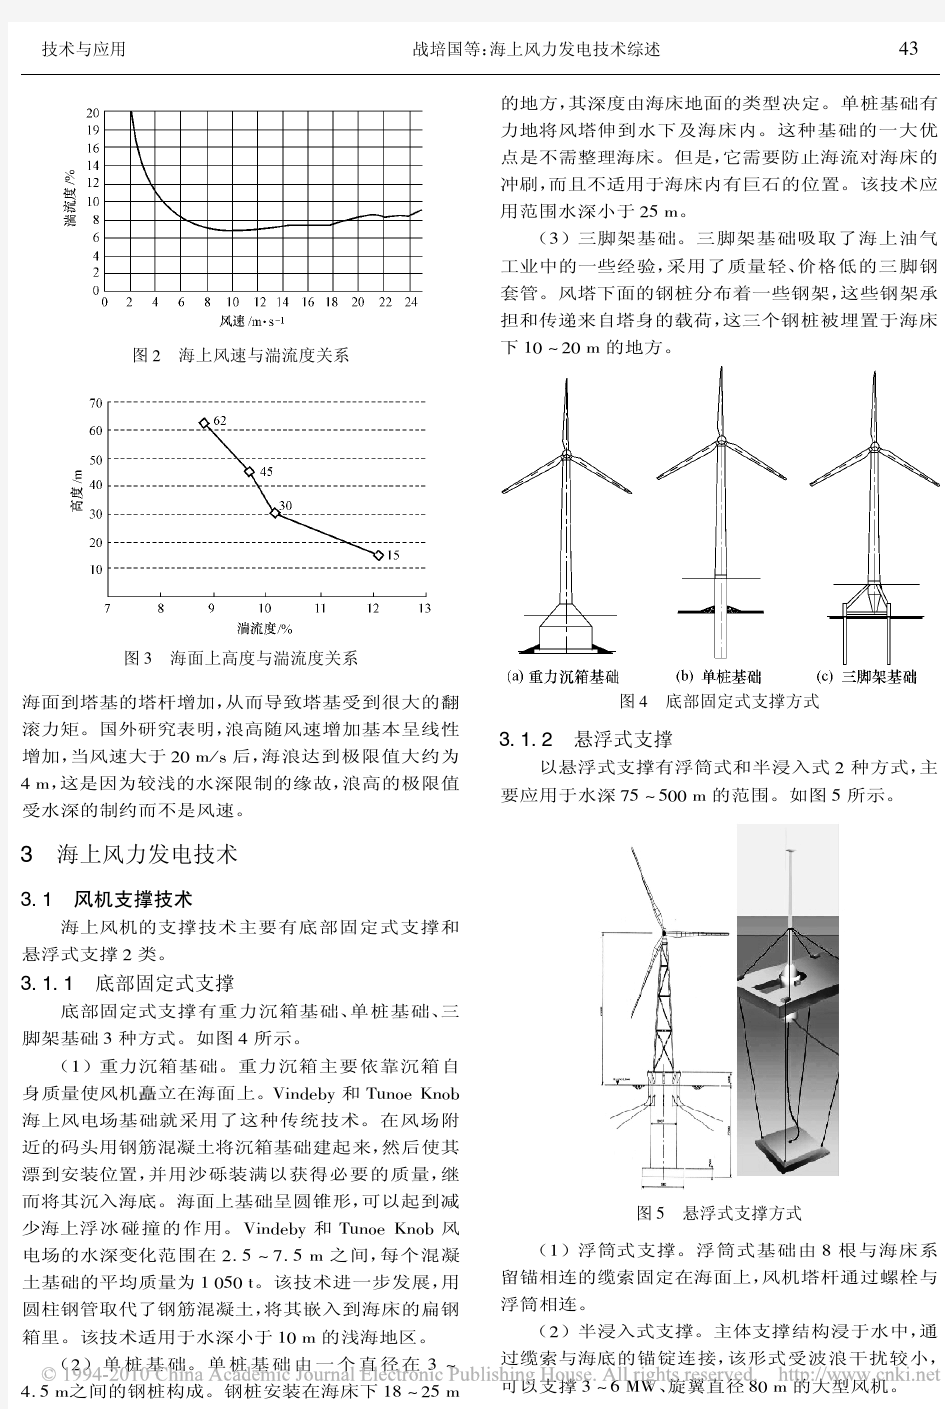 海上风力发电技术综述